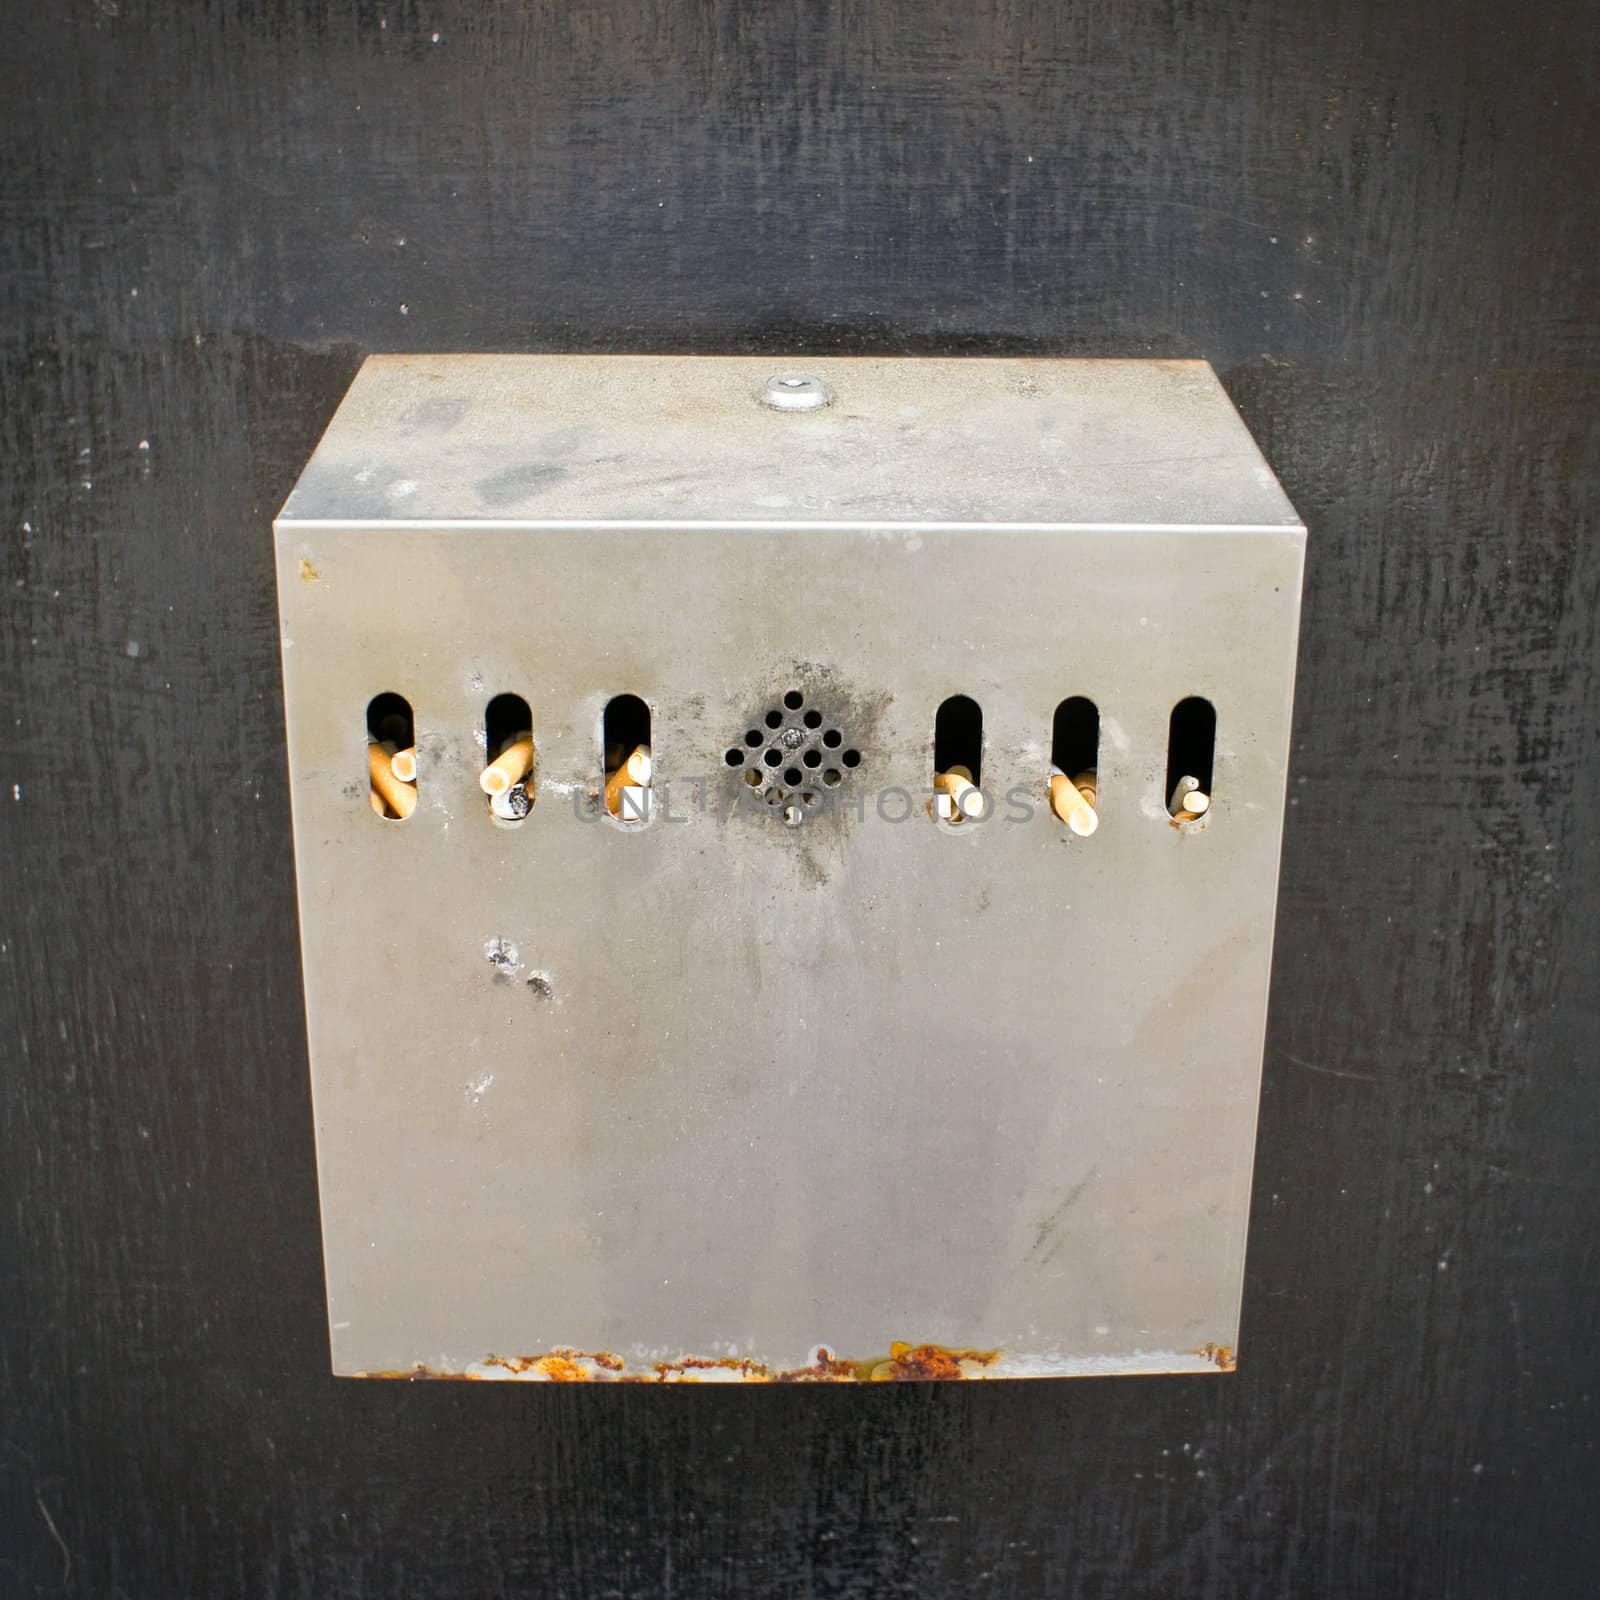 Cigarette disposal bin by trgowanlock